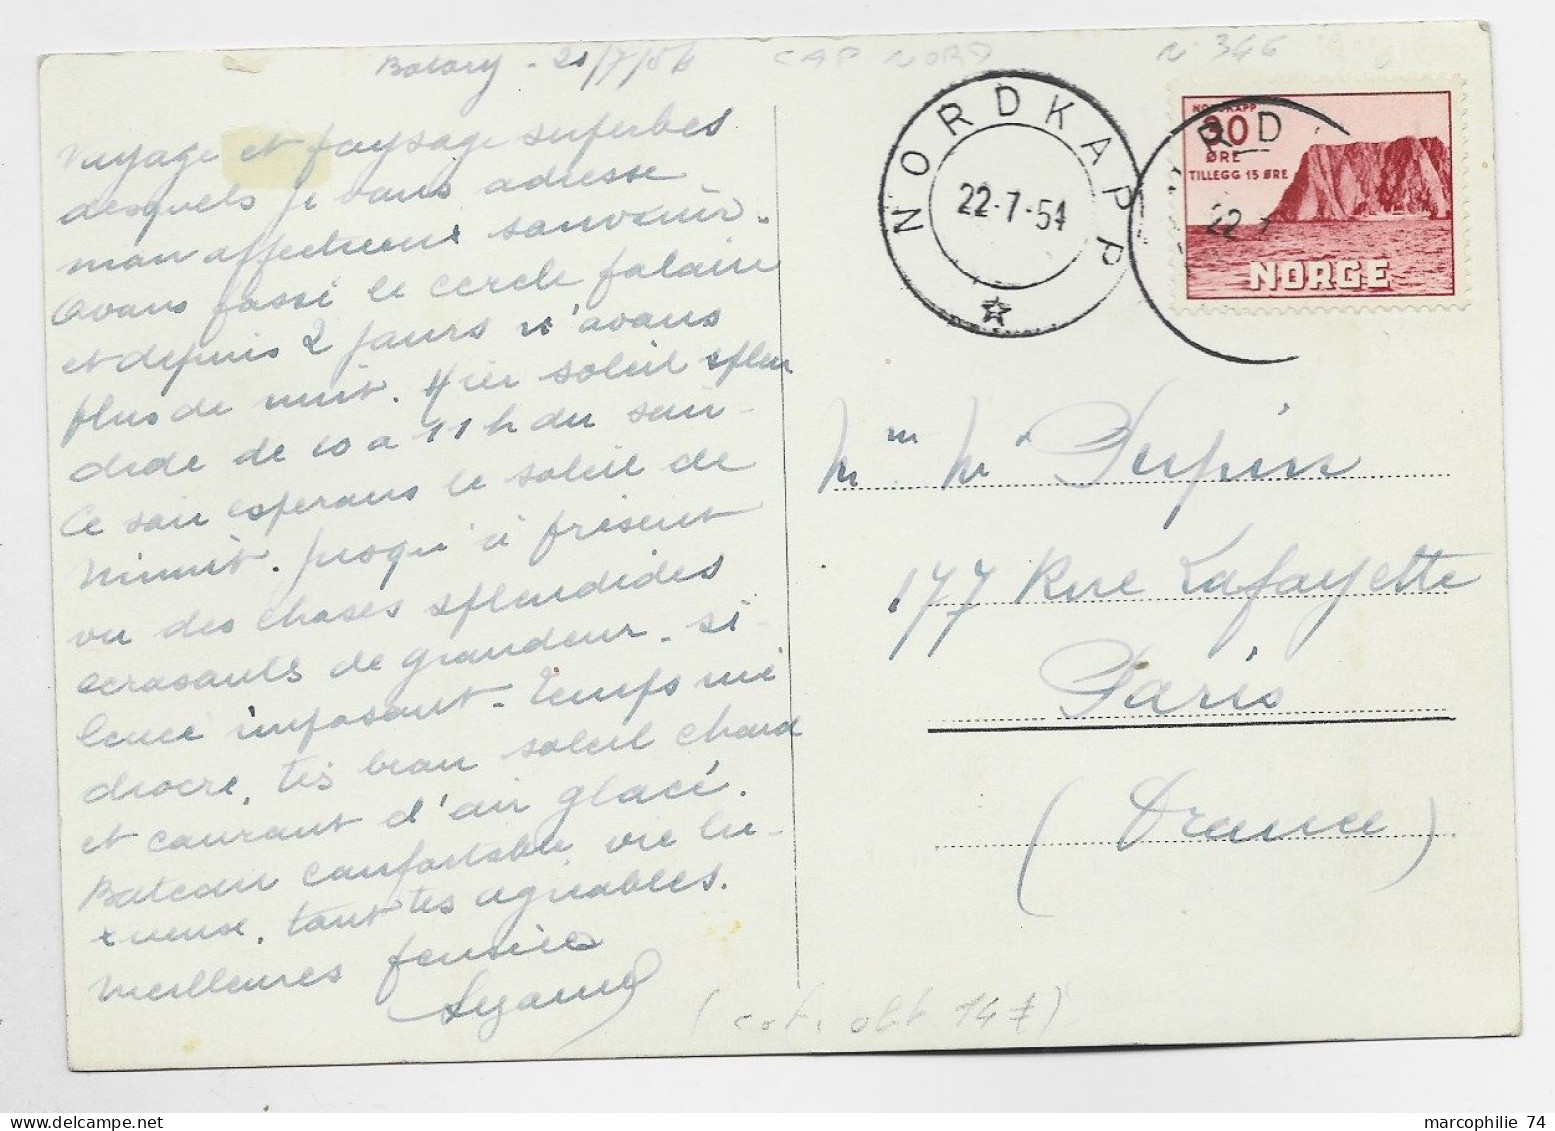 NORGE 30 ORE SOLO CARD CARTE NORDKAPP 22.7.1954 TO FRANCE - Cartas & Documentos